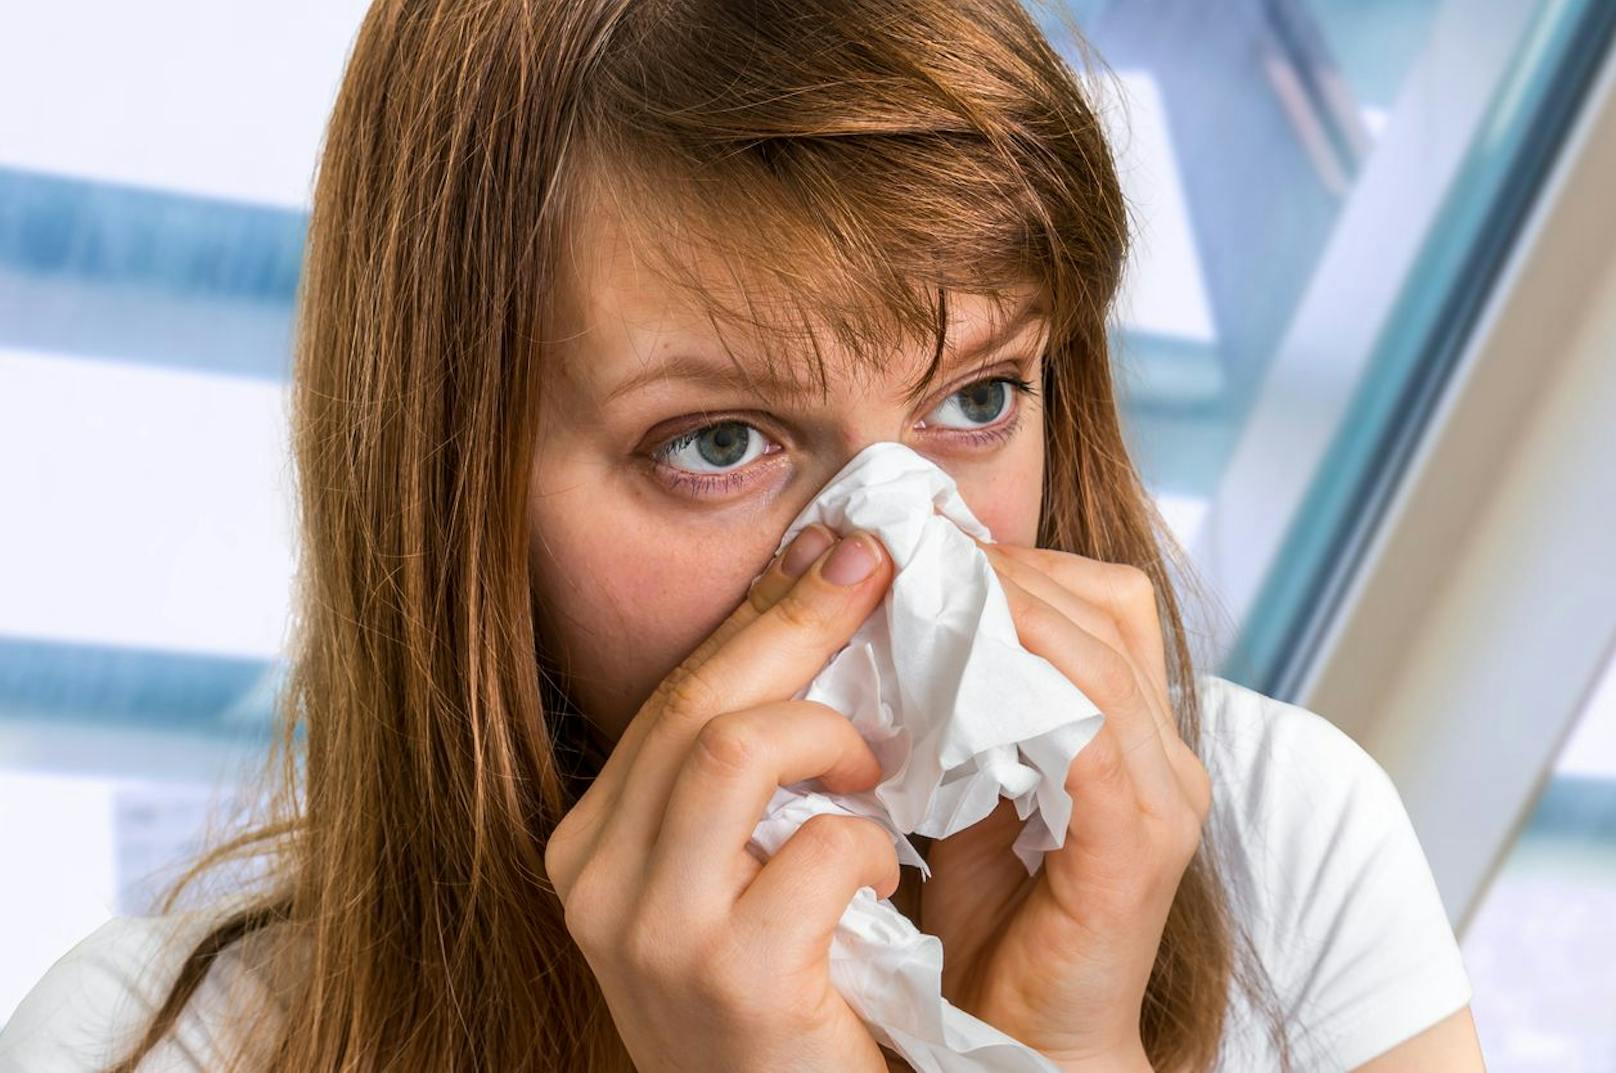 Rinnende Nase ohne Erkältung? Das ist sehr wohl möglich. Besonders Personen, die sich im Winter gerne in Innenräumen aufhalten sollten darauf vorbereitet sein Symptome zu entwickeln, die einer Erkältung gleichen könnten.